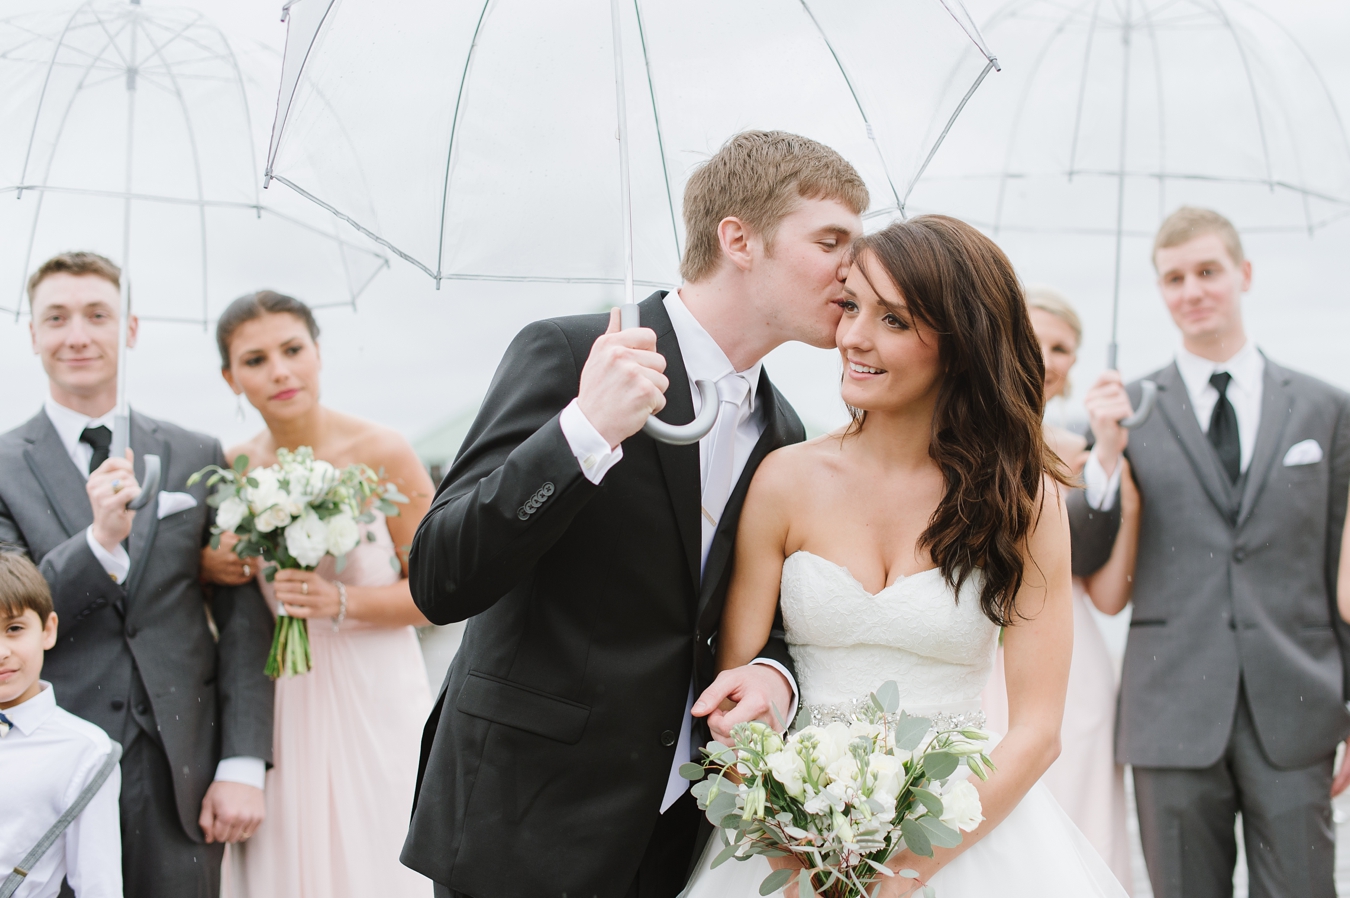 Rainy Day Umbrella Wedding Inspiration in Sherwood Forest, Maryland | Natalie Franke Photography